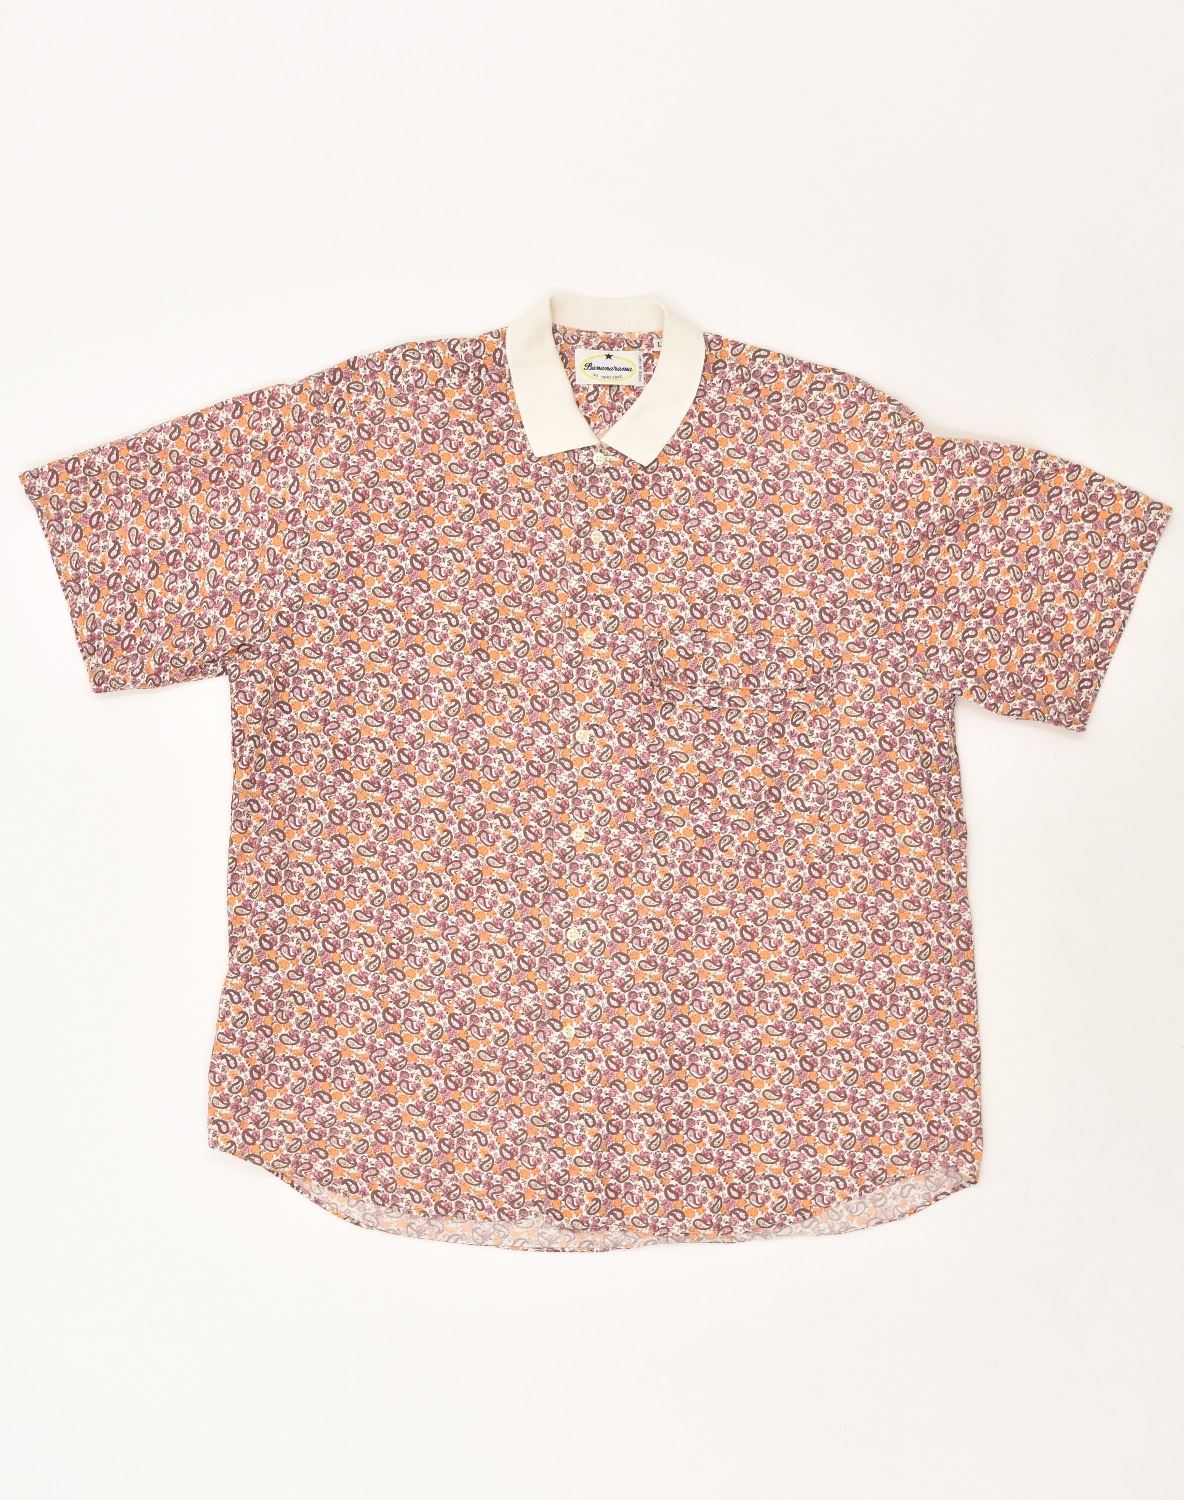 VINTAGE heren shirt met korte mouwen groot bruin paisley katoen | Vintage Vintage | Spaarzaamheid | Tweedehands vintage | Gebruikte kleding | Messina Hembry